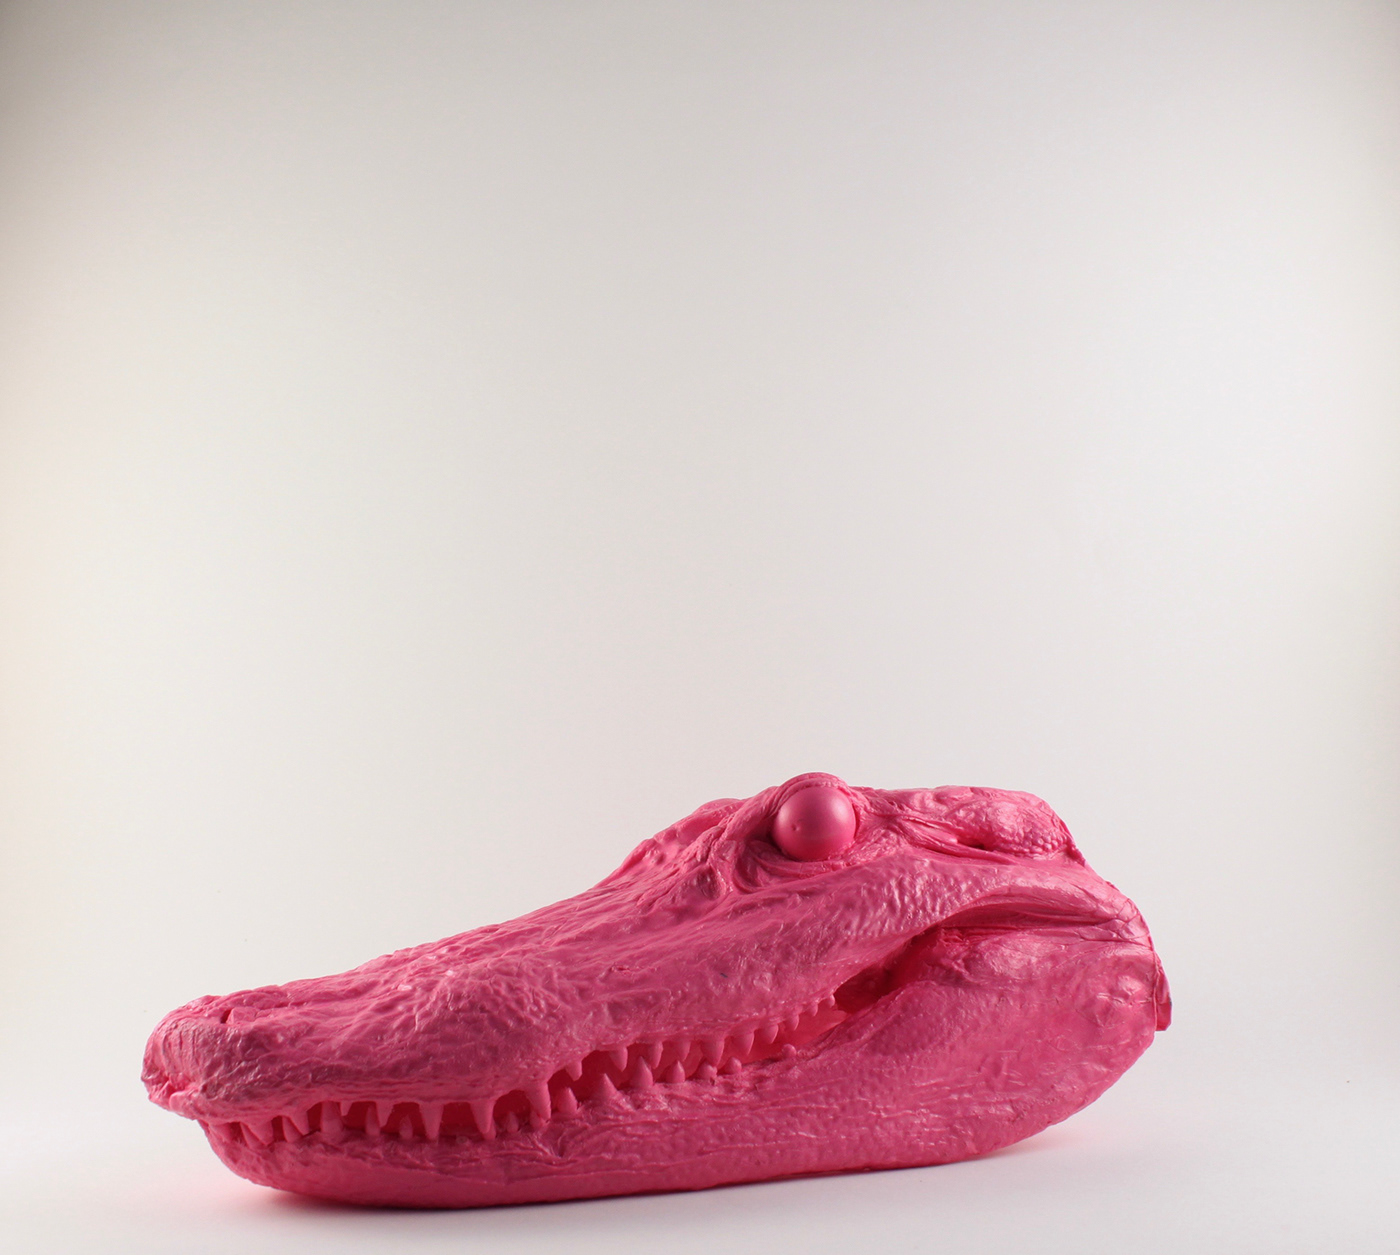 alligator Mold Making sculpture resin